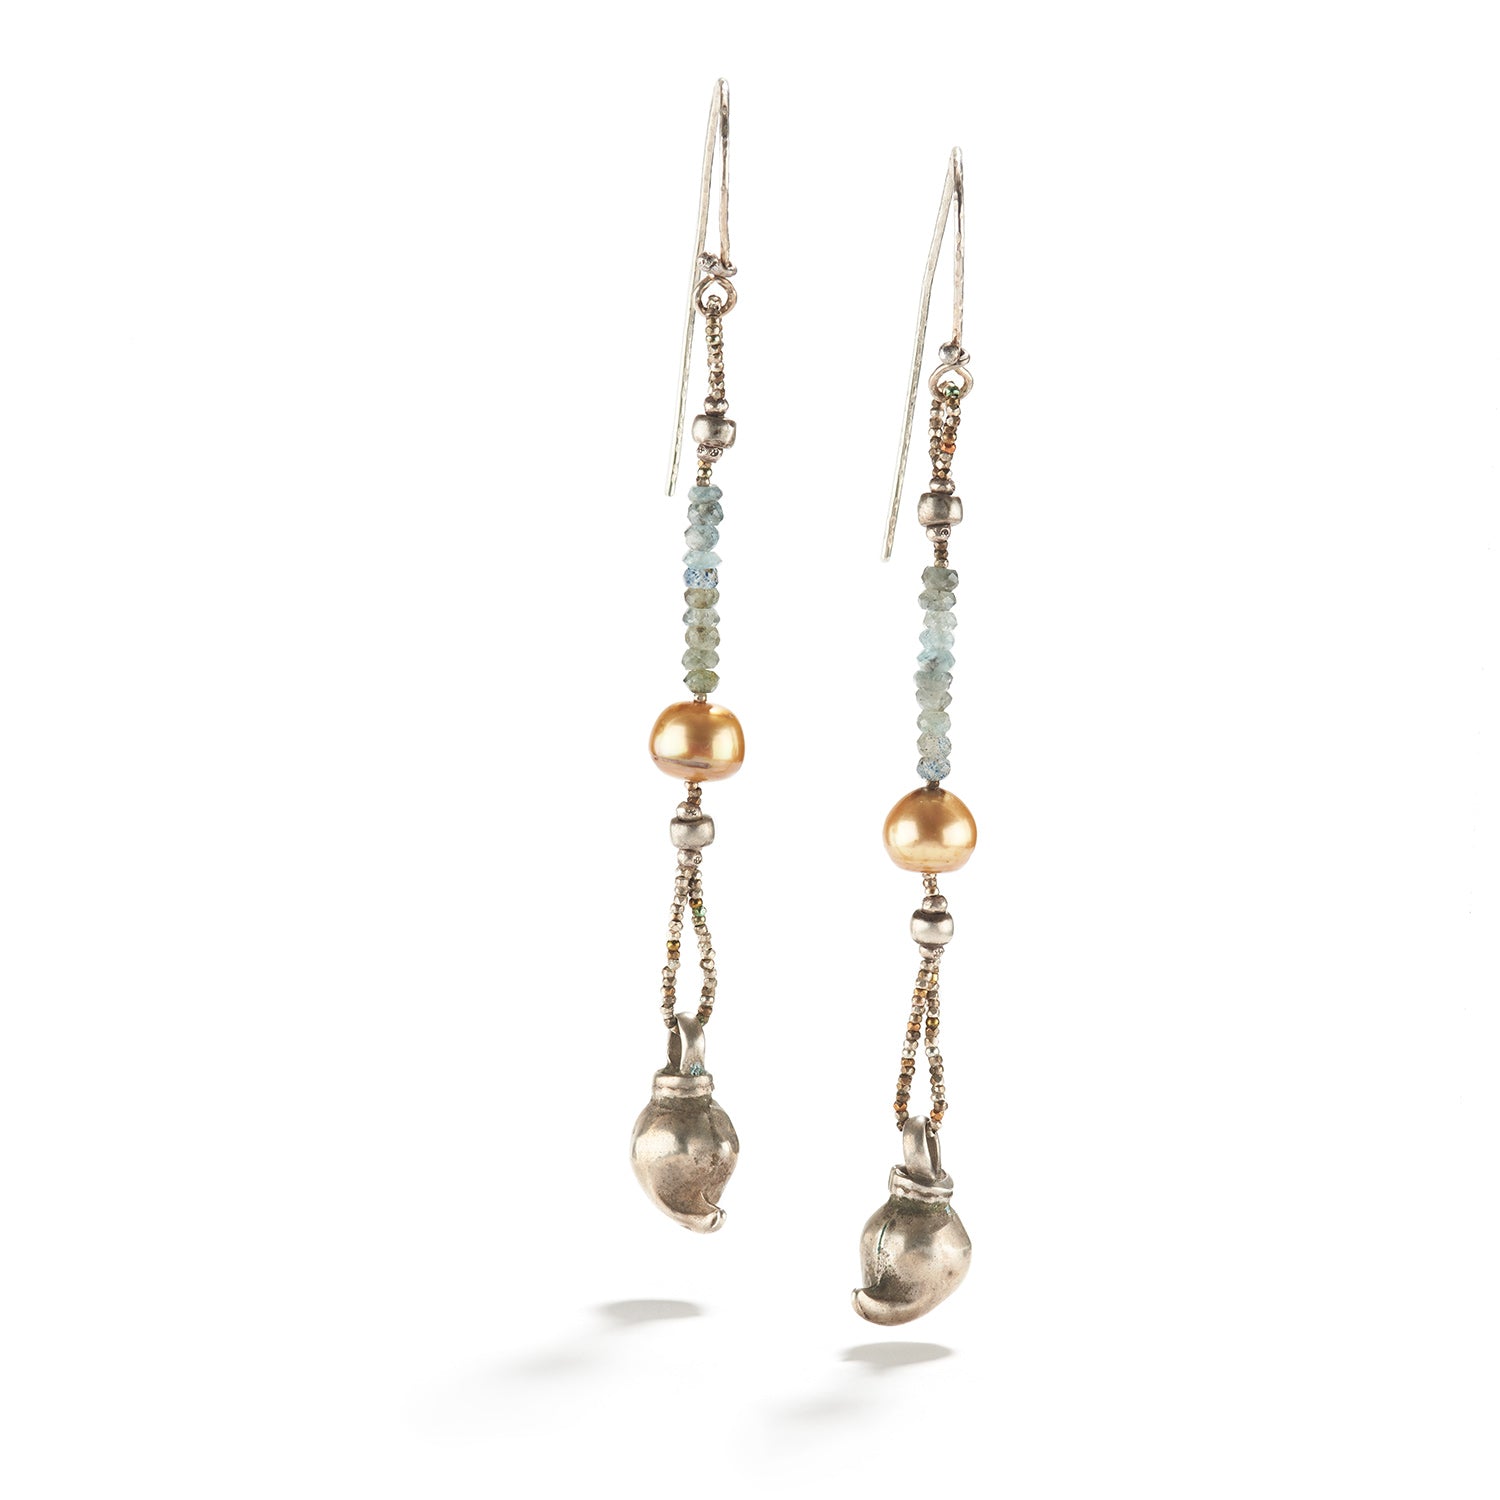 Pearl and Aquamarine Earrings